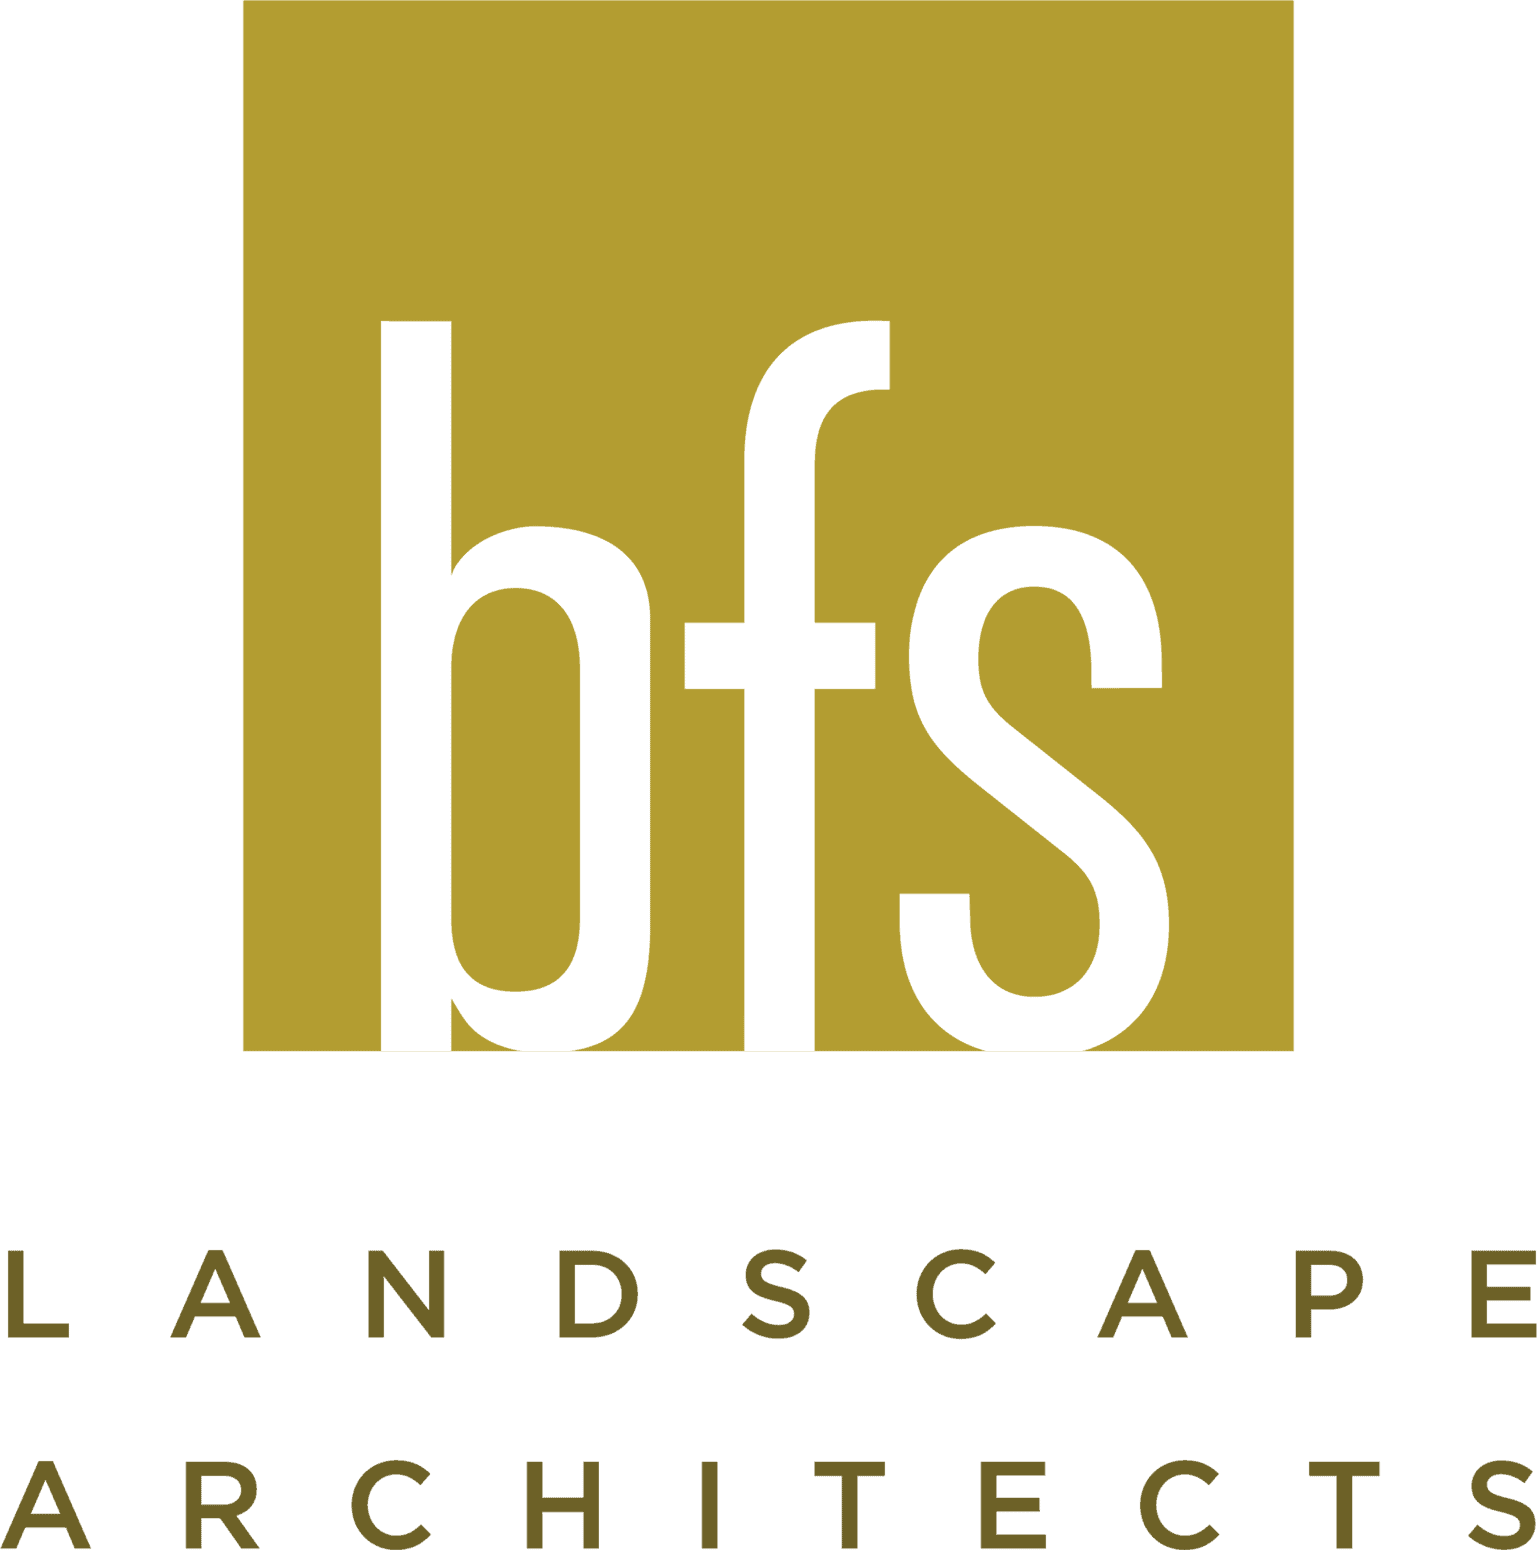 Bfs Landscape Architects Square Lockup Full Color